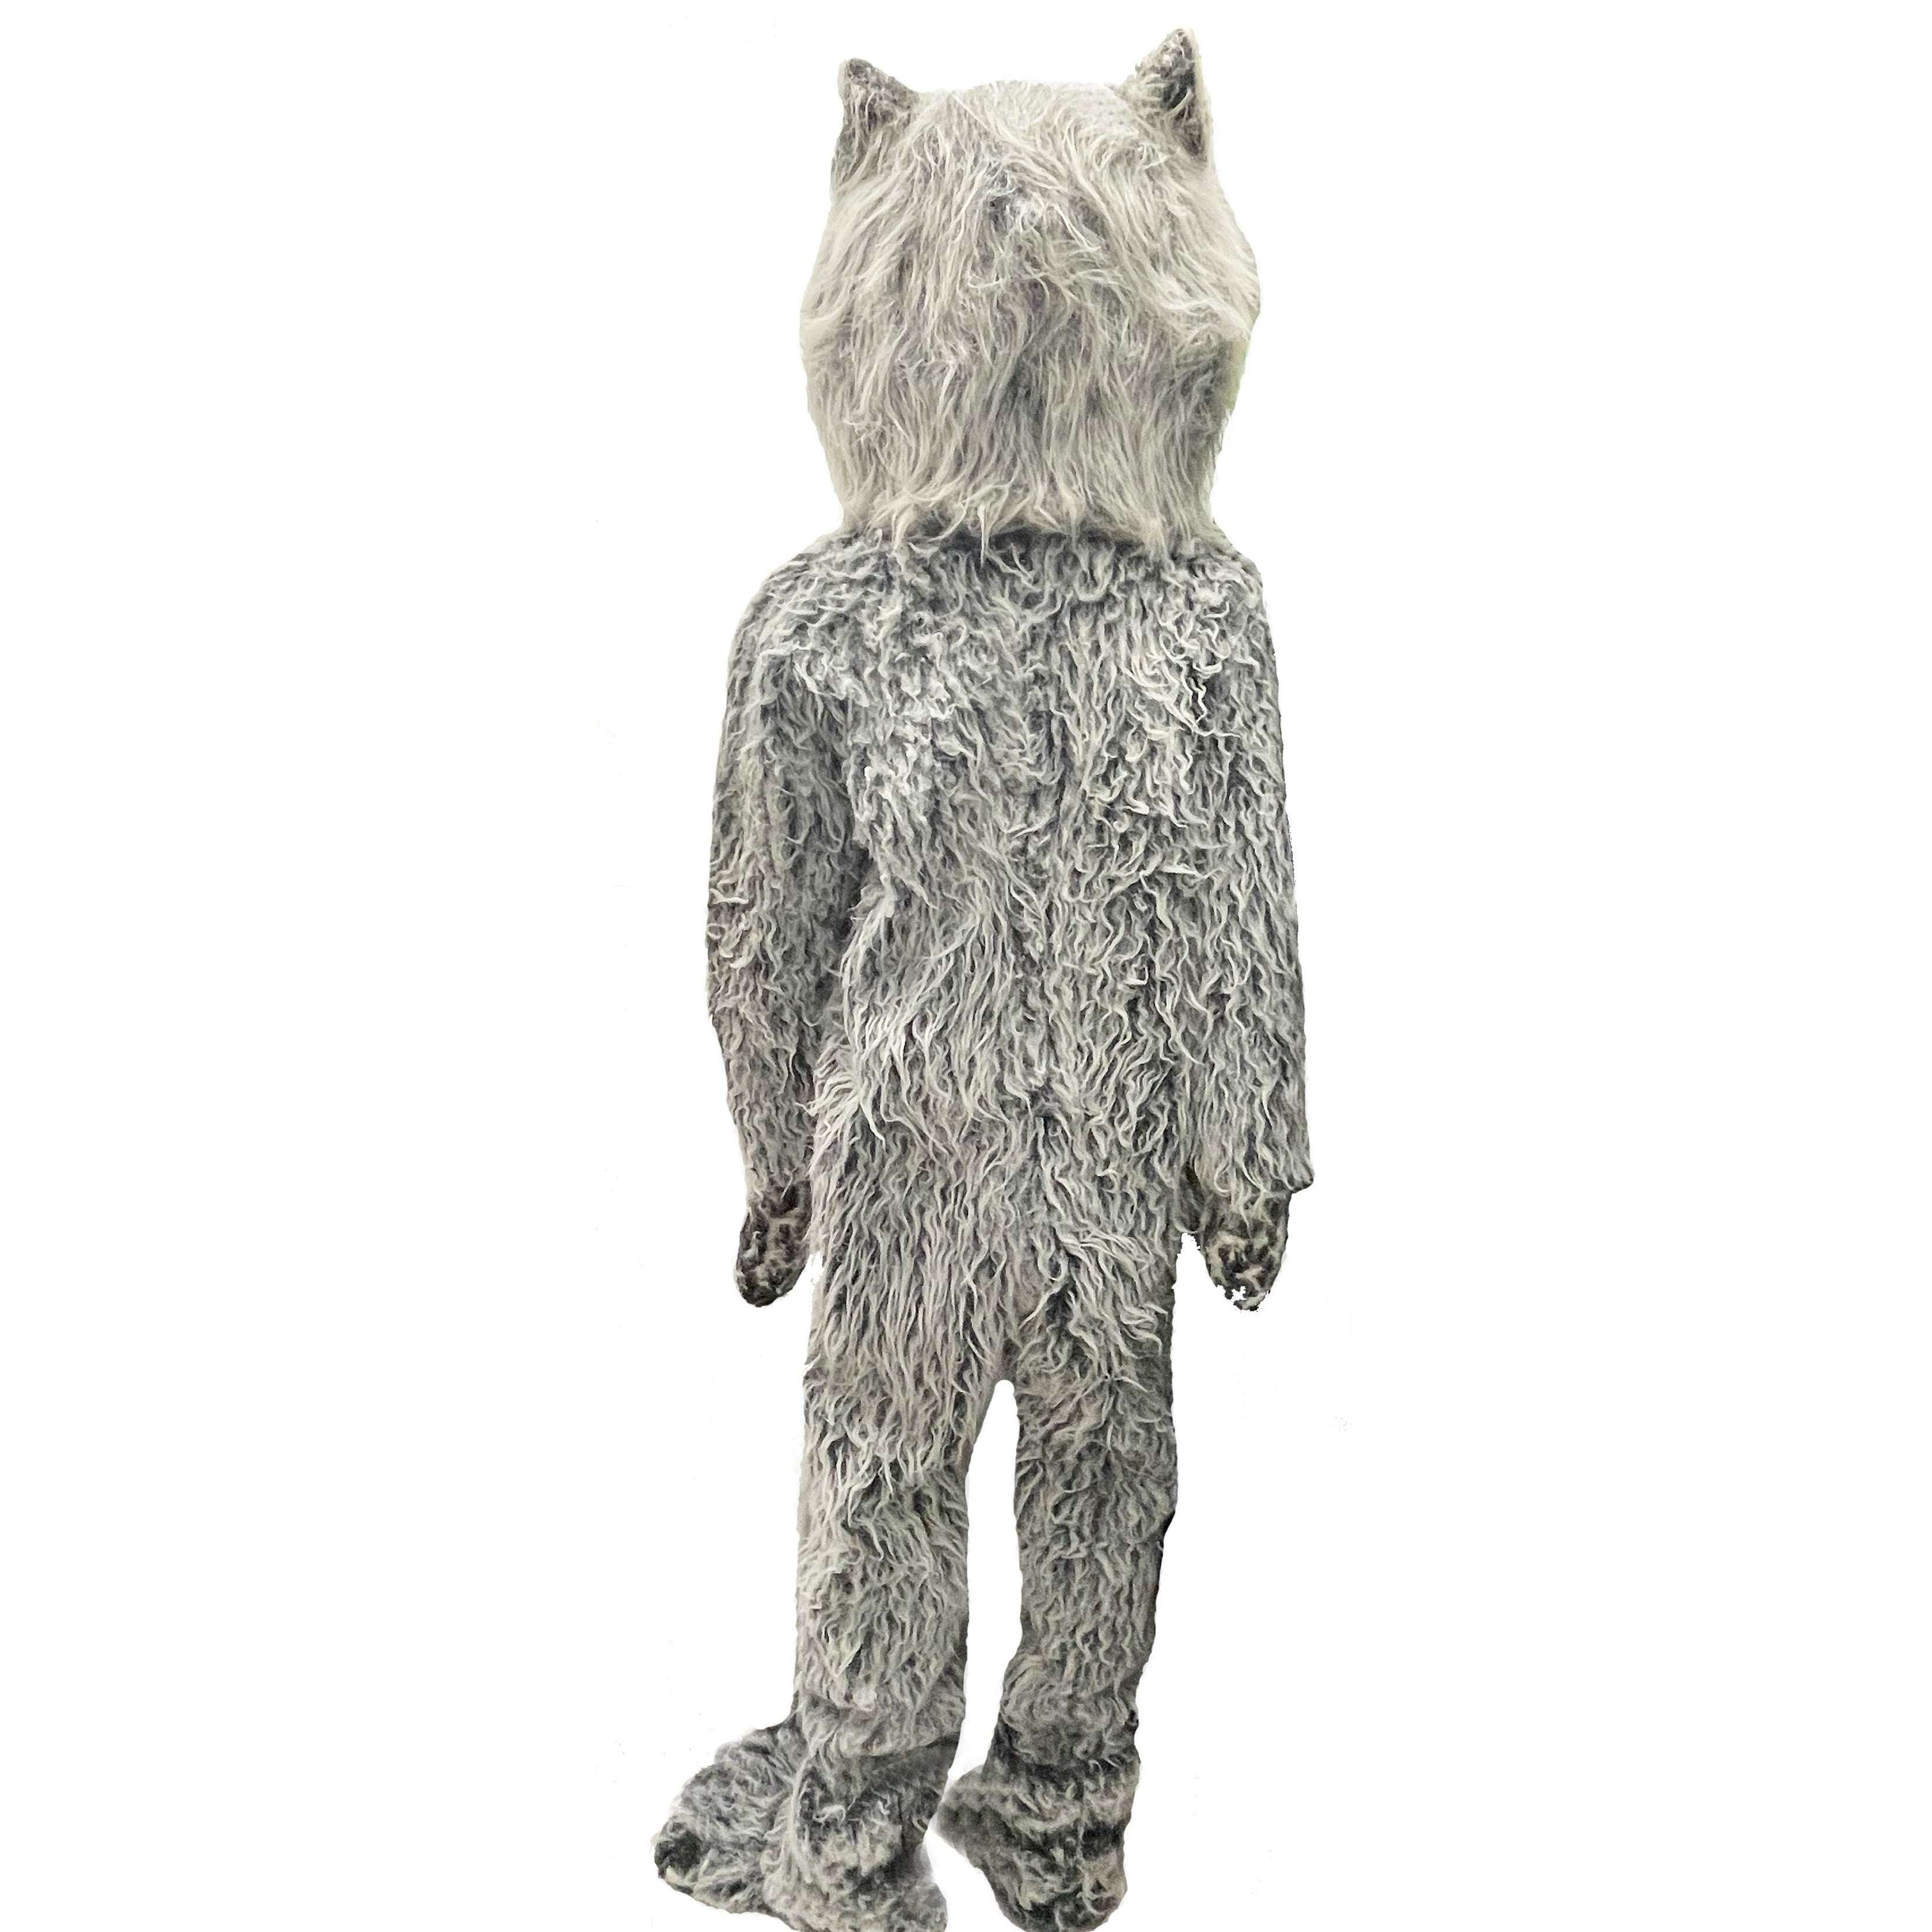 Husky Mascot Adult Costume